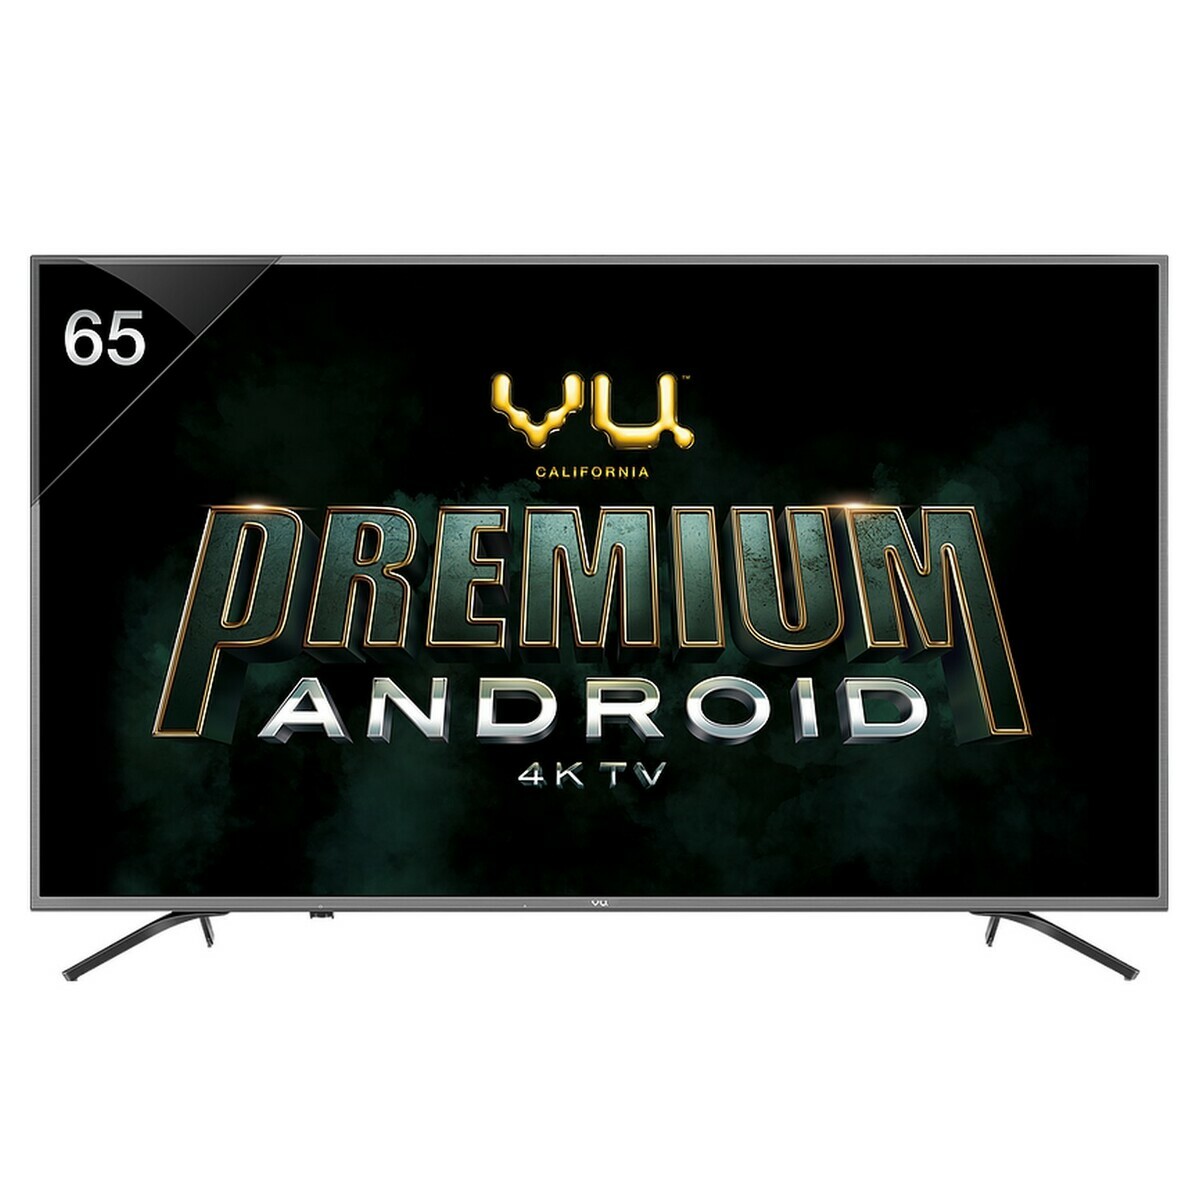 Vu 4K Ultra HD Android Smart LED TV 65OA 65"